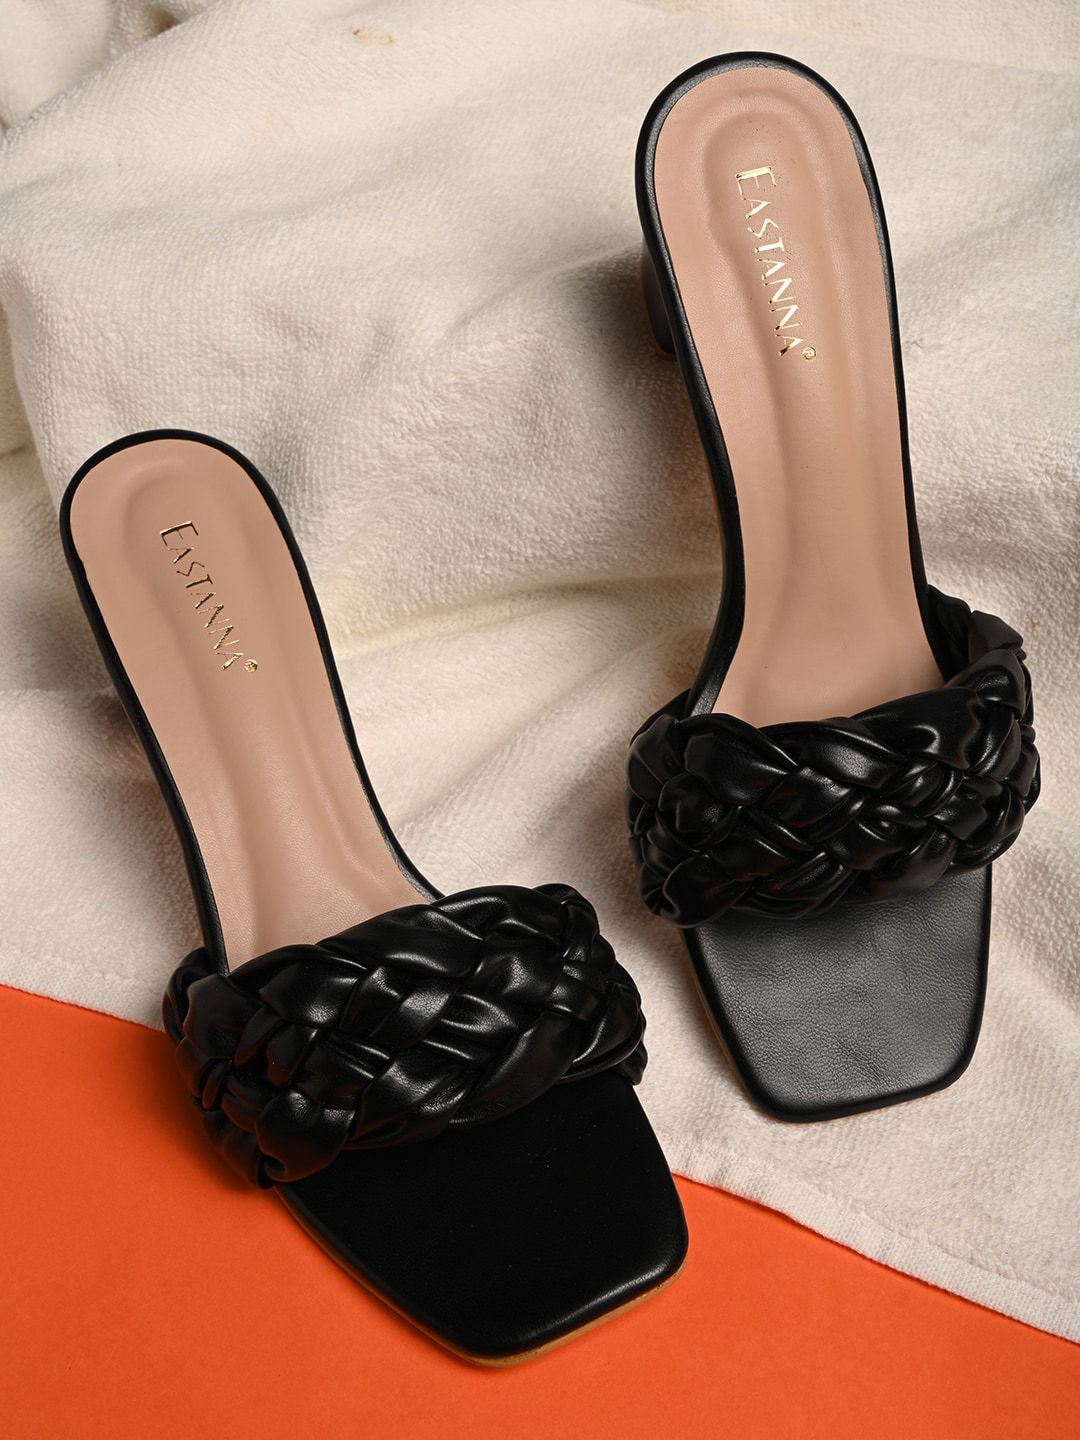 BuckleUp Black Textured Block Sandals Price in India